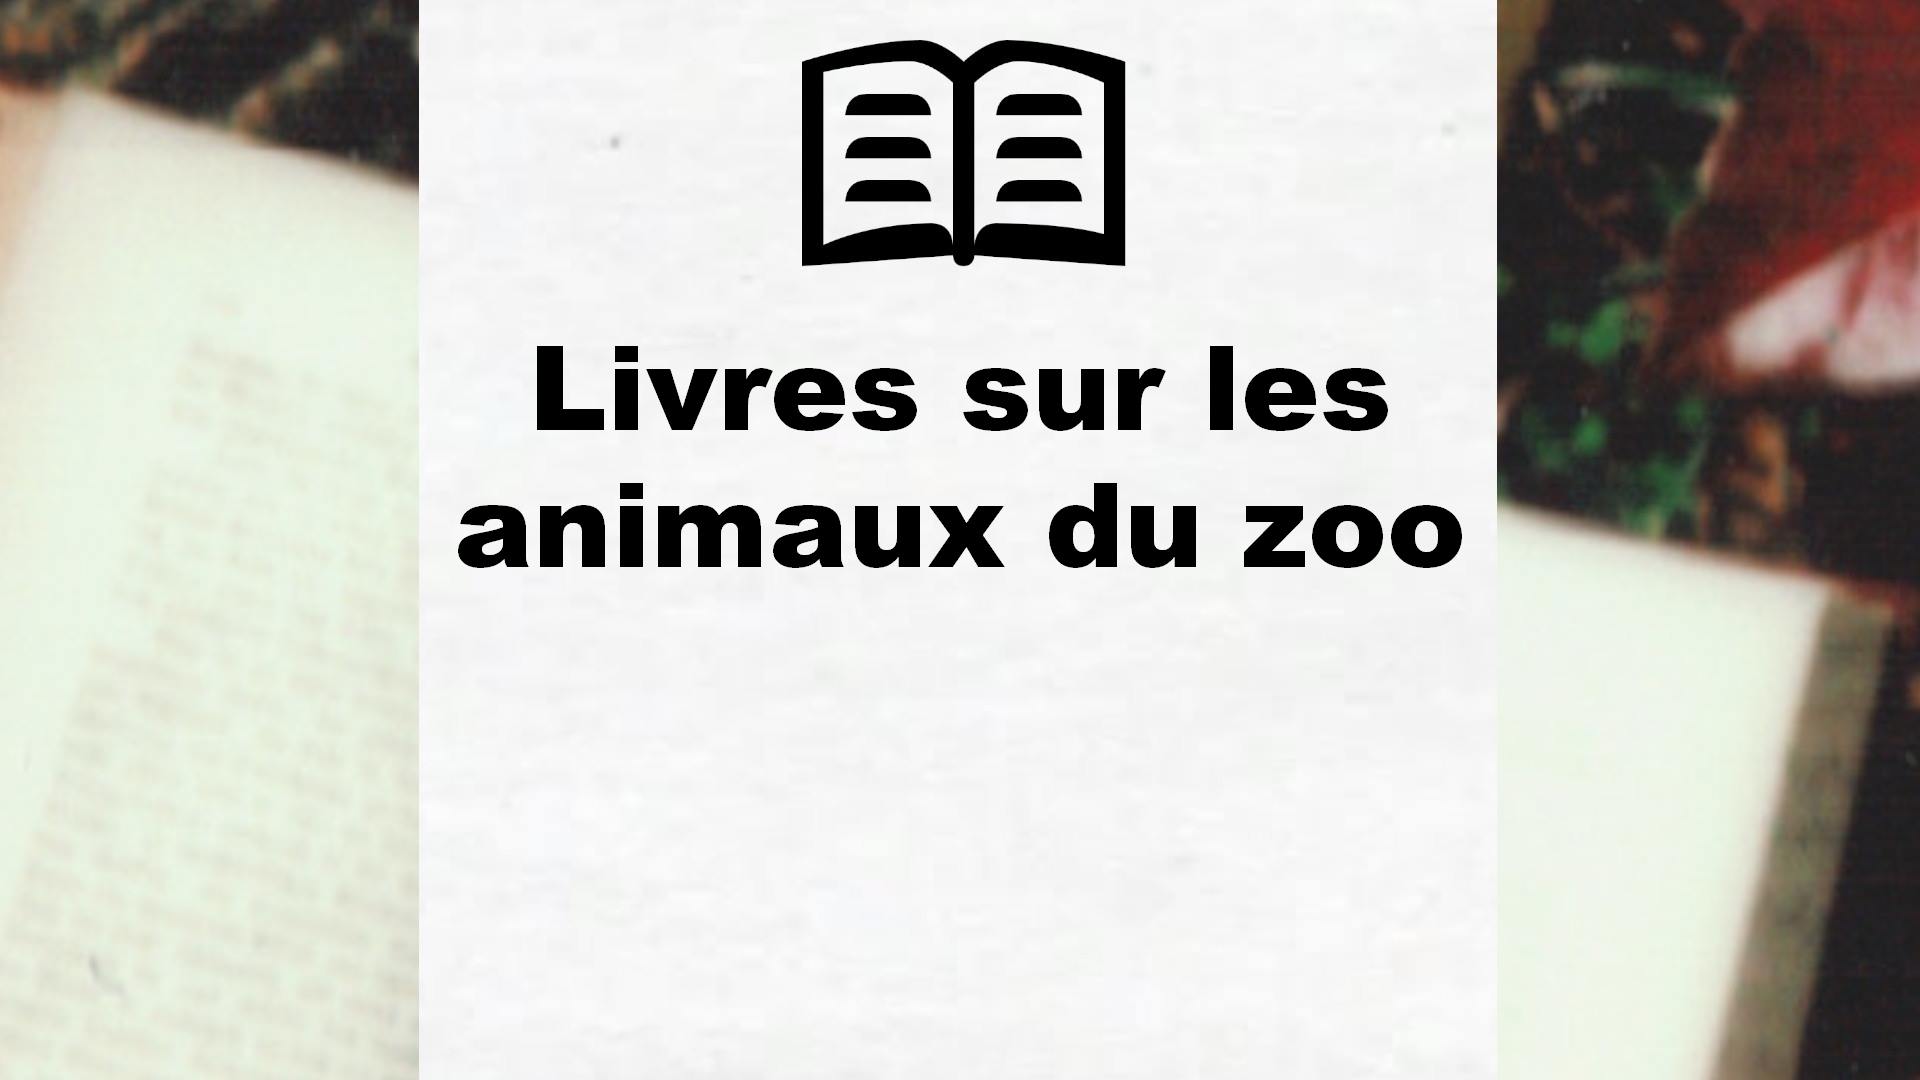 Livres sur les animaux du zoo